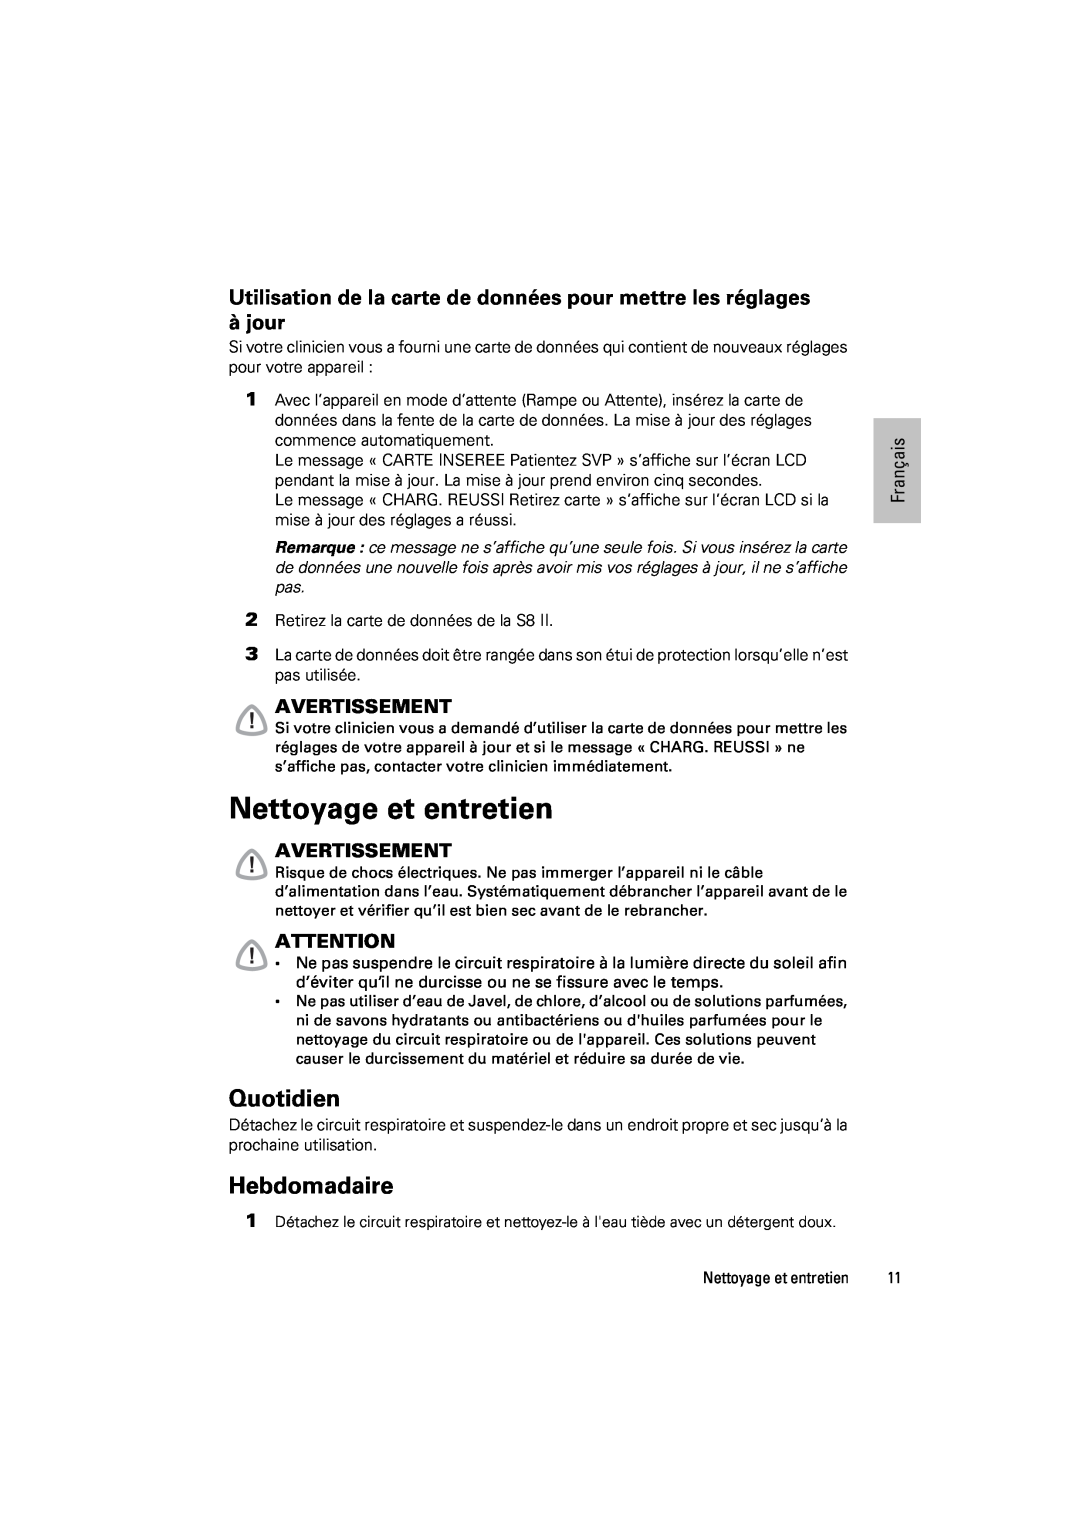 ResMed s8 manual Nettoyage et entretien, Quotidien, Hebdomadaire, Avertissement, Français 